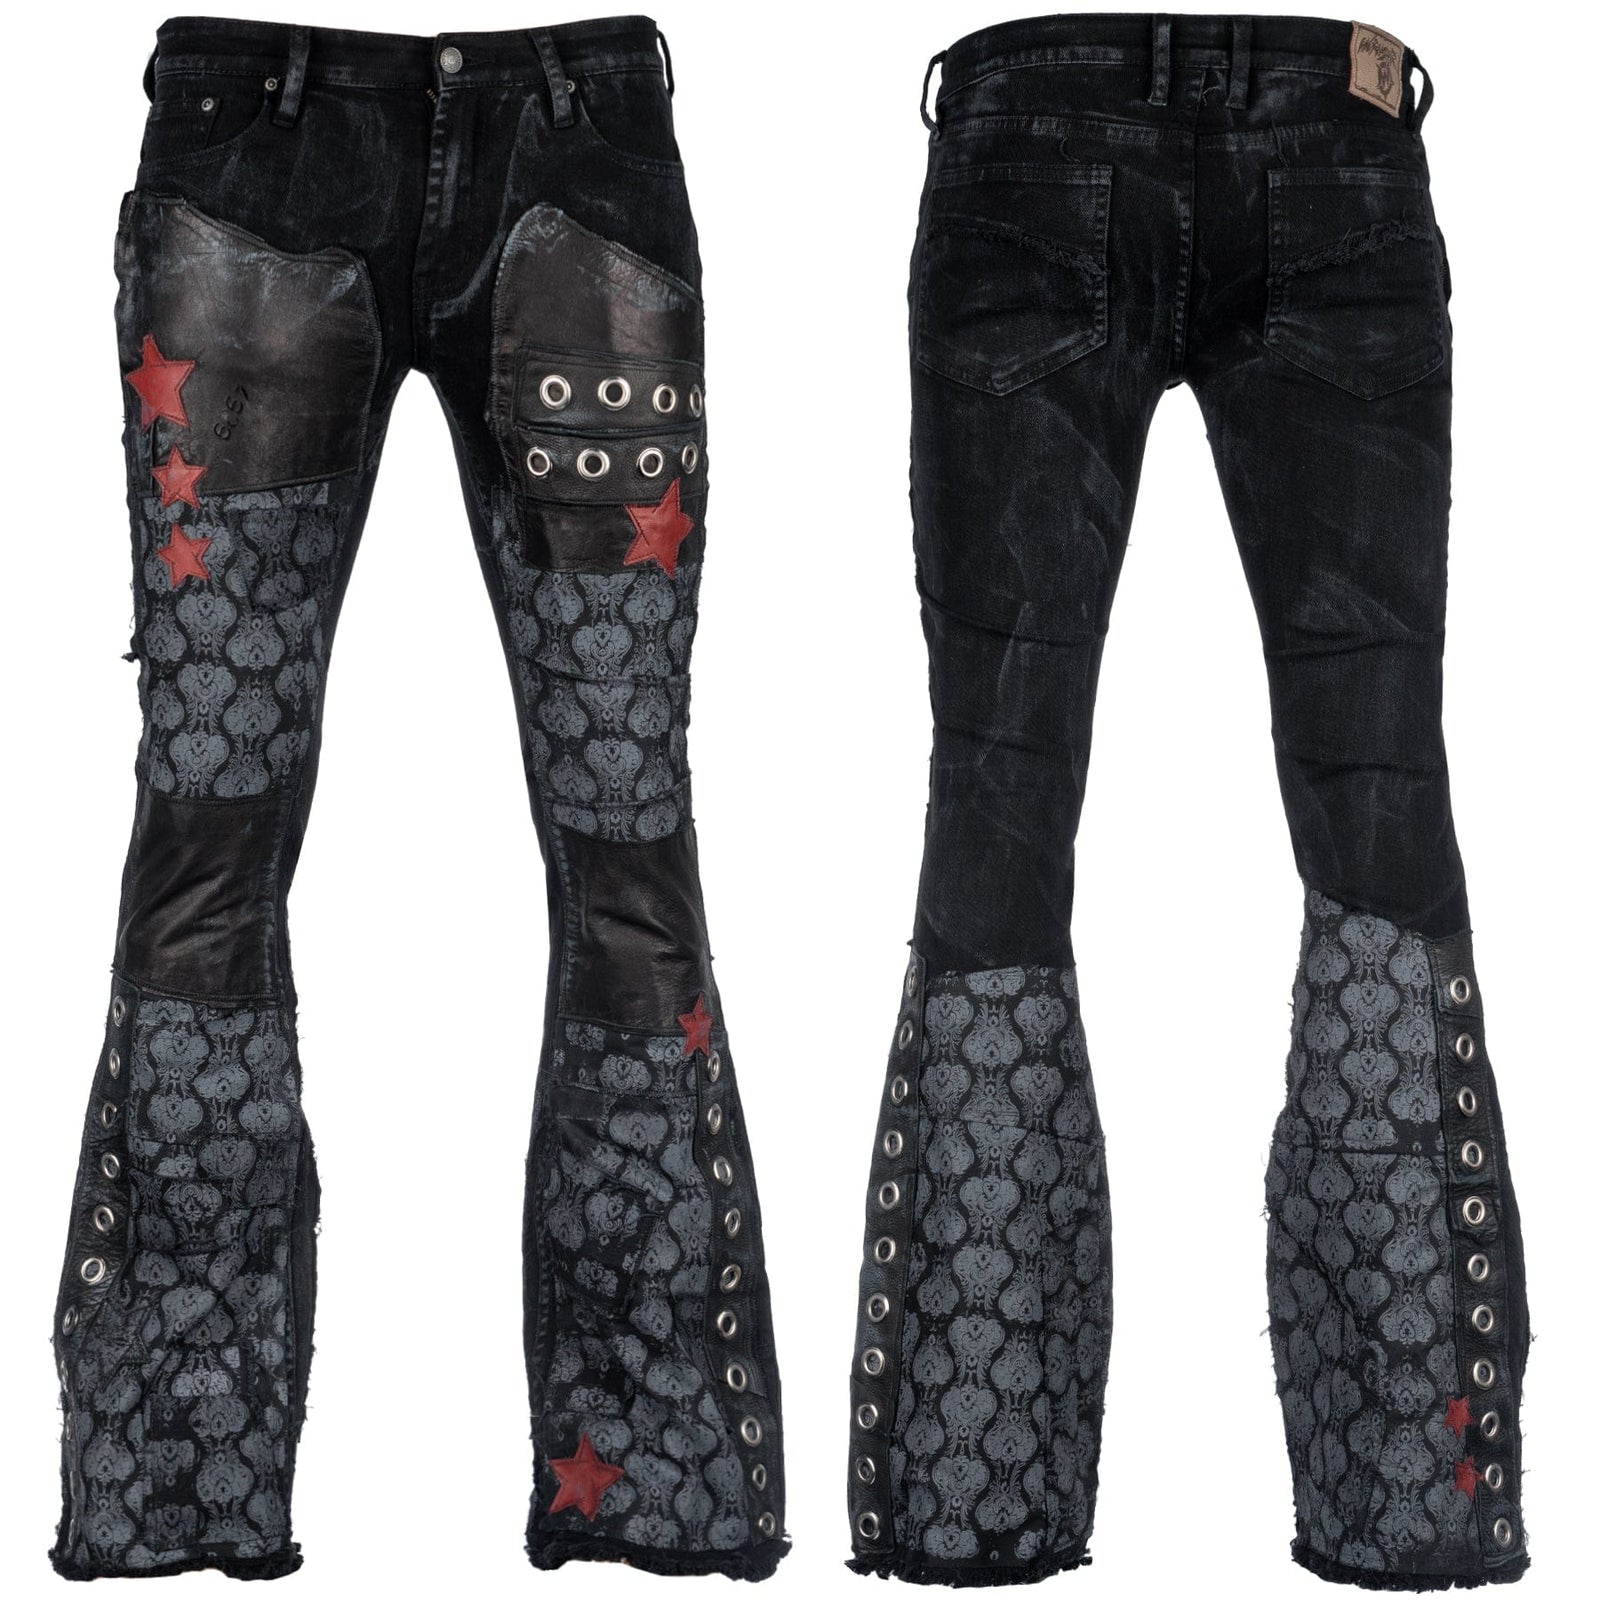 Men’s Blackout Gothic/Punk Rocker Jeans